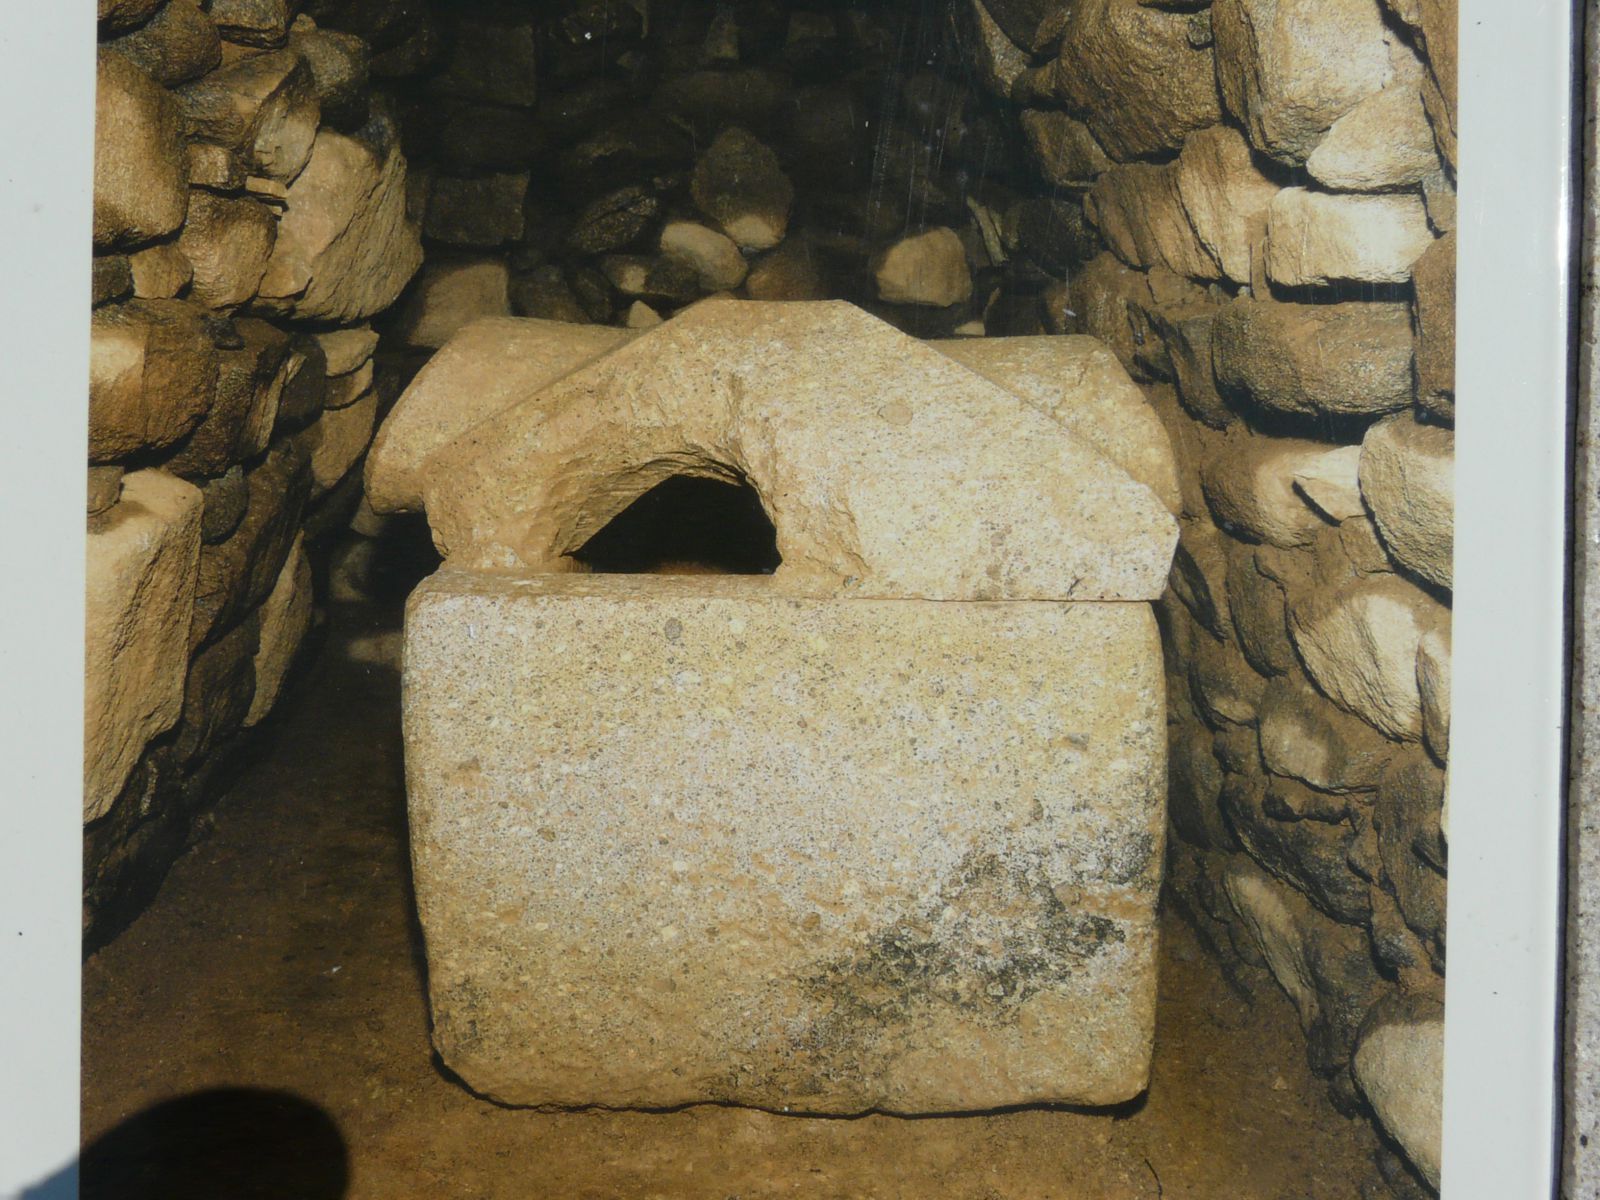 解説板３の石棺部分の写真